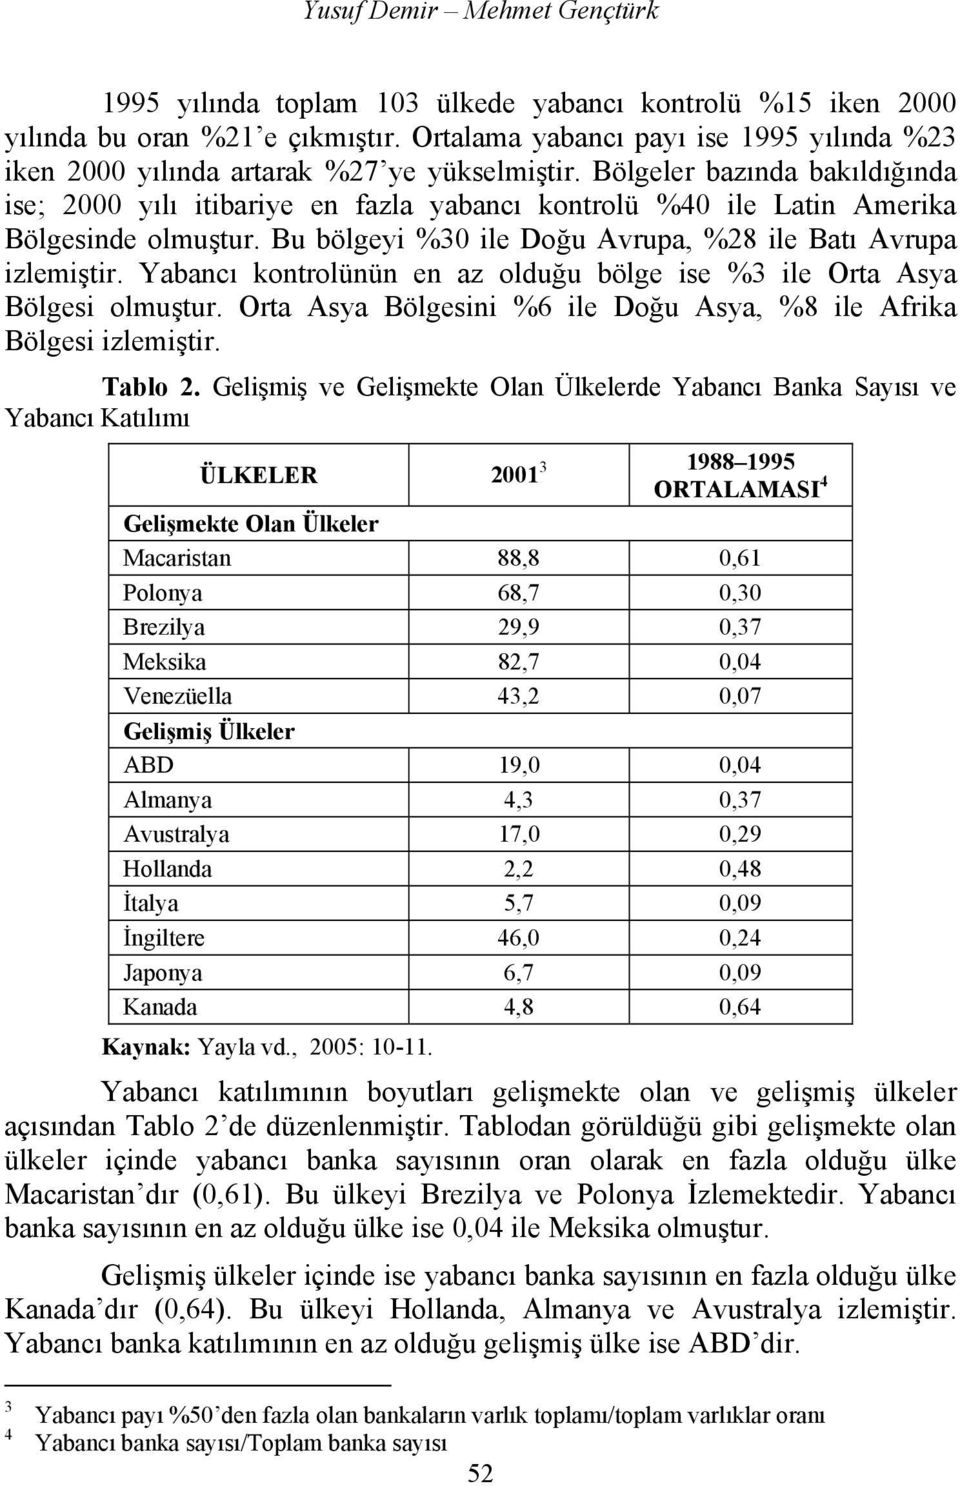 Bölgeler bazında bakıldığında ise; 2000 yılı itibariye en fazla yabancı kontrolü %40 ile Latin Amerika Bölgesinde olmuştur. Bu bölgeyi %30 ile Doğu Avrupa, %28 ile Batı Avrupa izlemiştir.